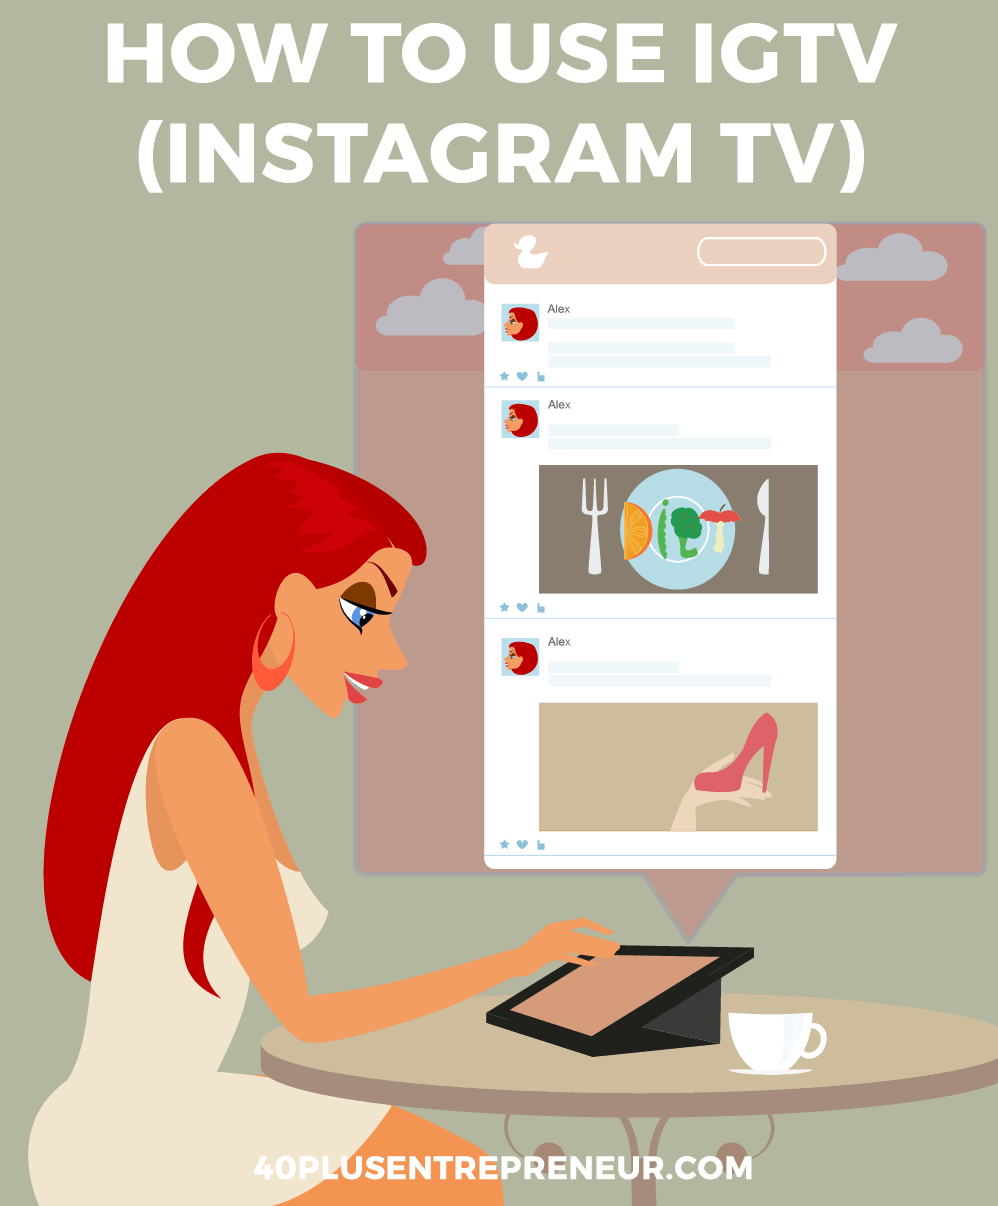 How to use IGTV (instagram TV) | truepotentialacademy.com